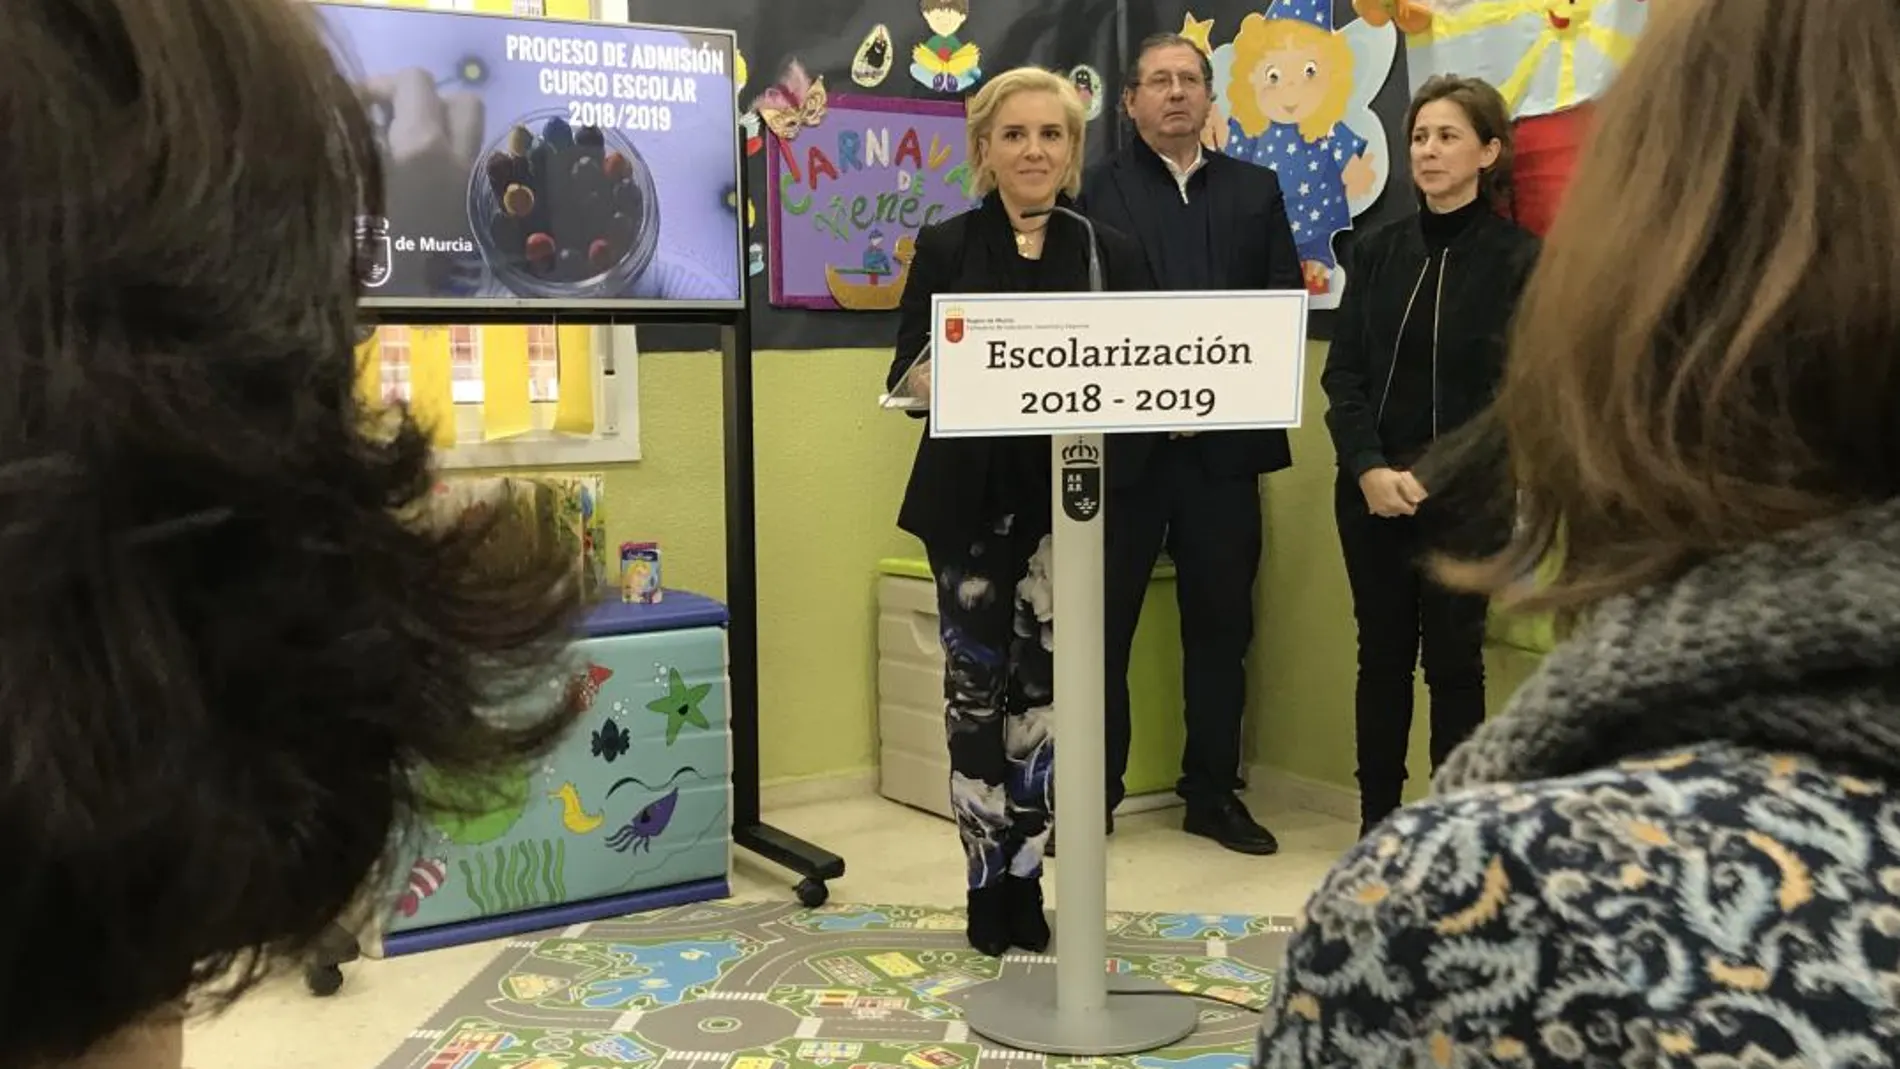 La consejera de Educación, Juventud y Deportes, Adela Martínez-Cachá, presentó ayer el proceso de admisión de alumnado para el curso escolar 2018/19 con novedades respecto a las solicitudes de los centros escogidos por los padres y madres de la Región